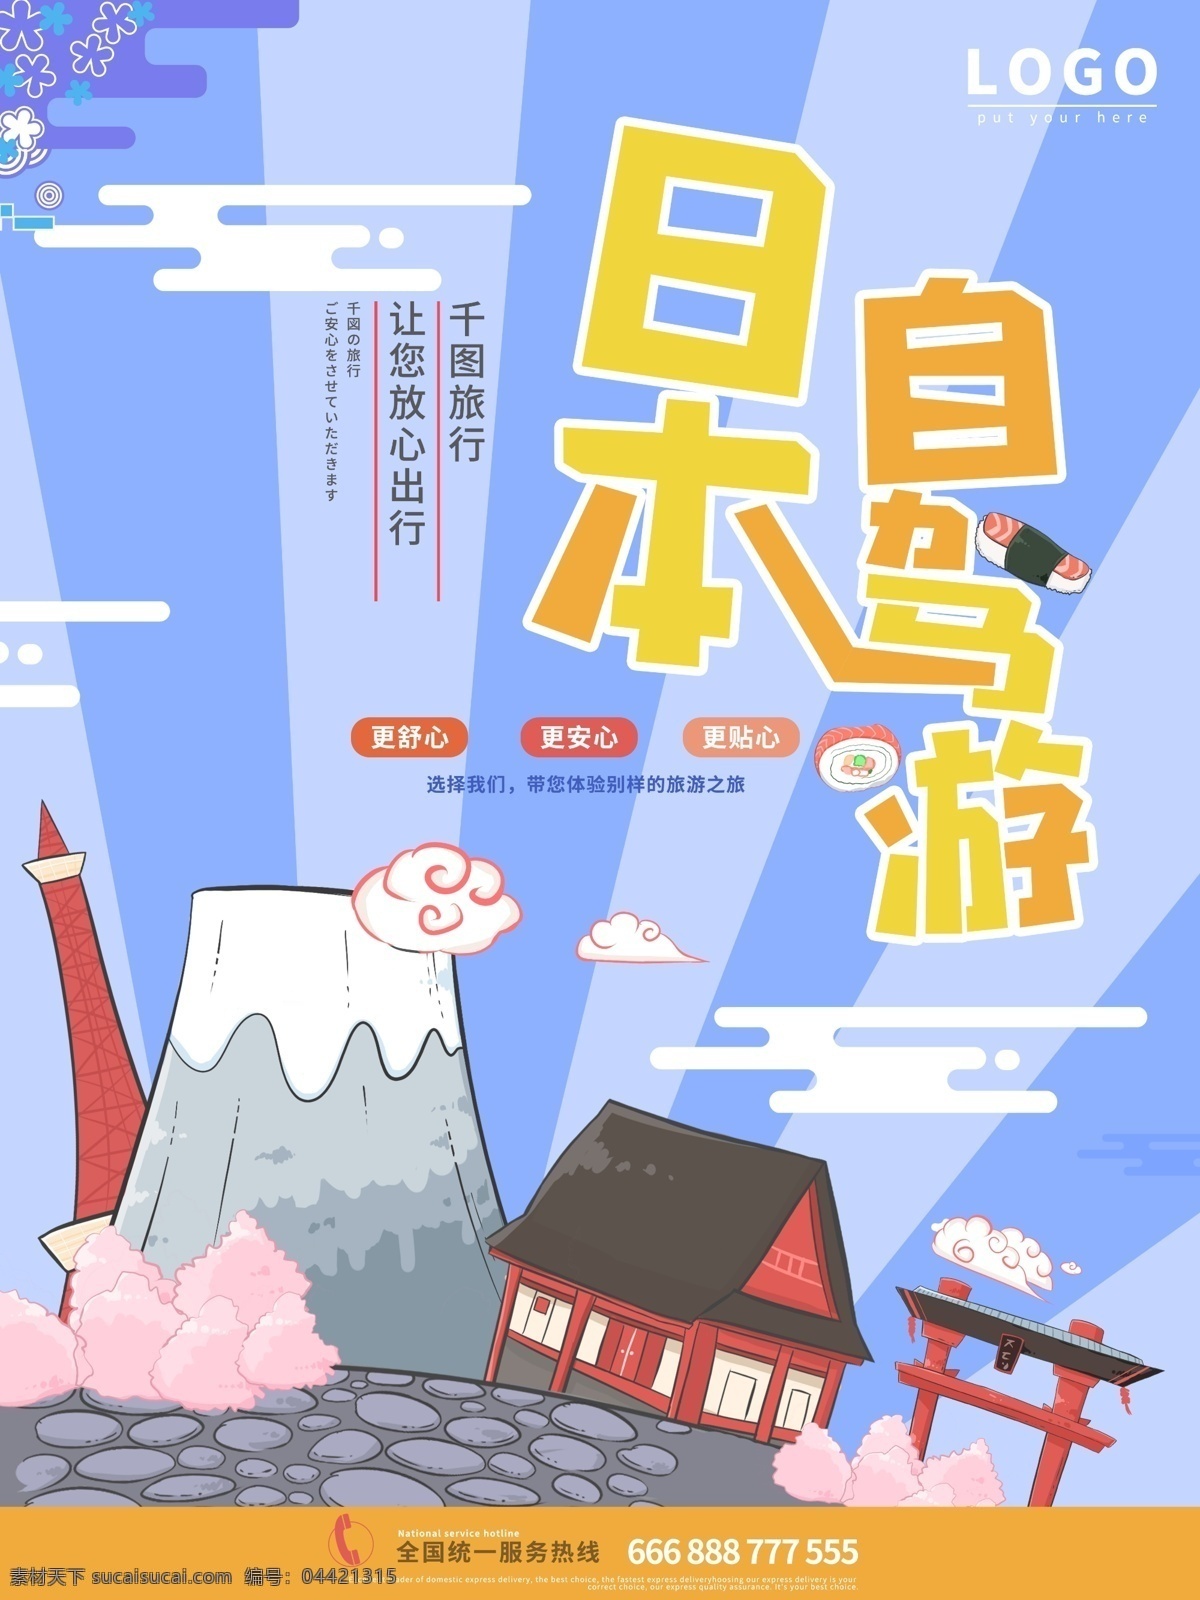 日本旅游 创意 海报 日本 自驾游 房子 蓝色 樱花